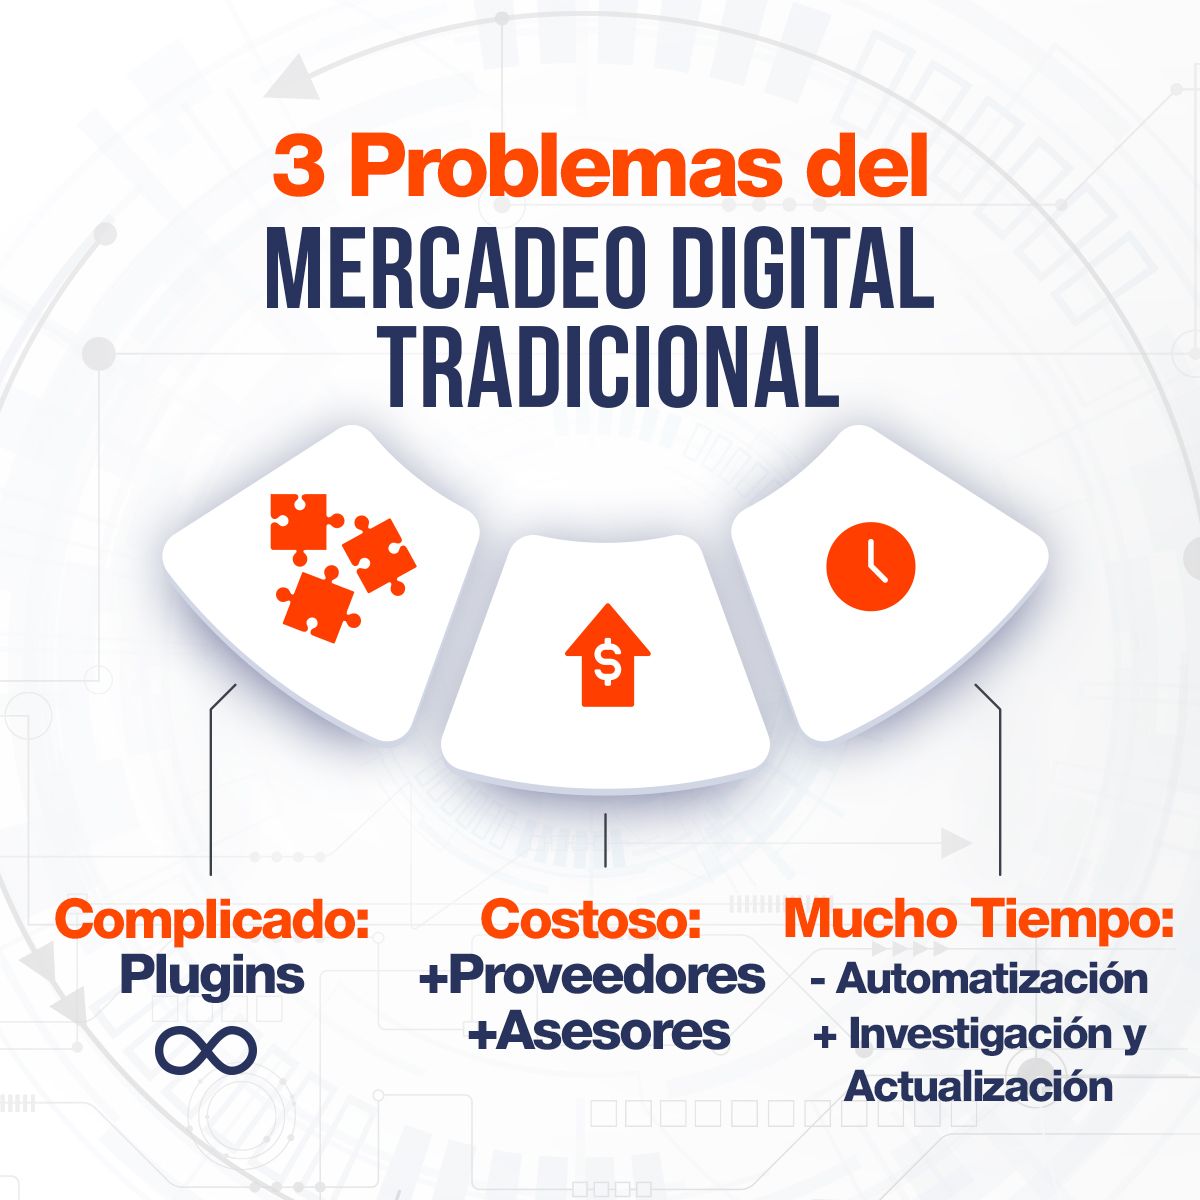 3 Problemas del Mercadeo Digital Tradicional  1. Complicado: Plugins ∞  2. Costos: +Proveedores, +Asesores  3. Requiere Mucho Tiempo: - Automatización, + Investigación y Actualización